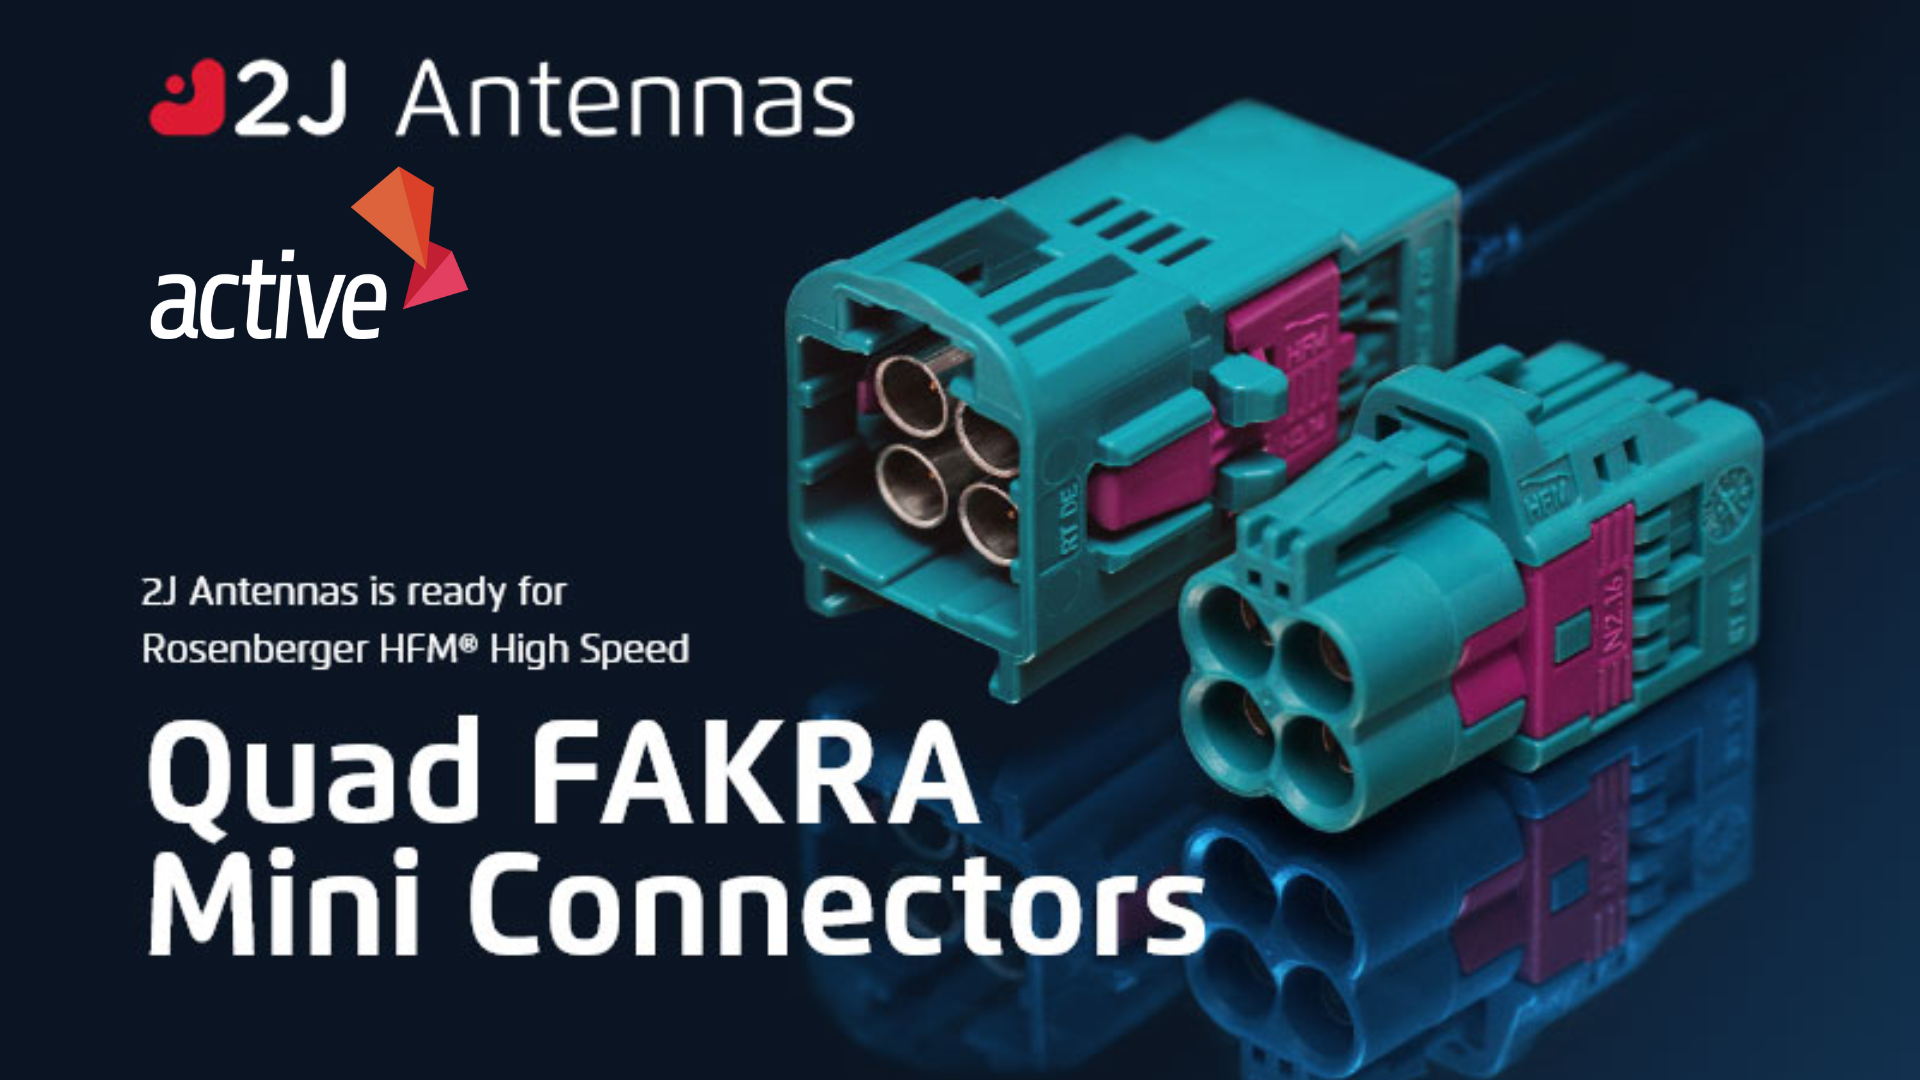 High Speed Quad FAKRA Connectors